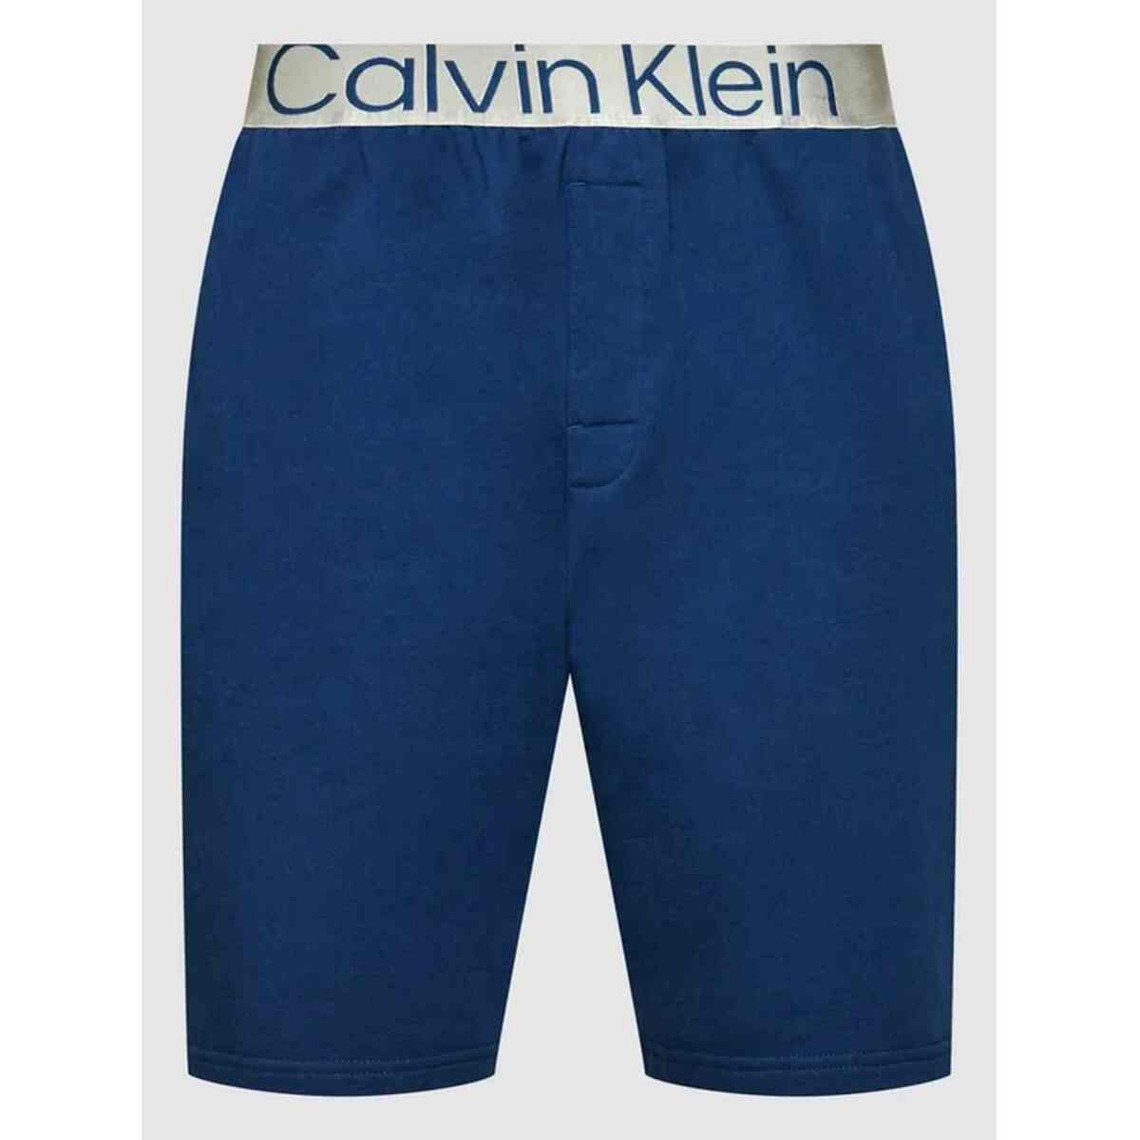 Bas de pyjama - Short Calvin Klein EUROPE Underwear Bleu en coton